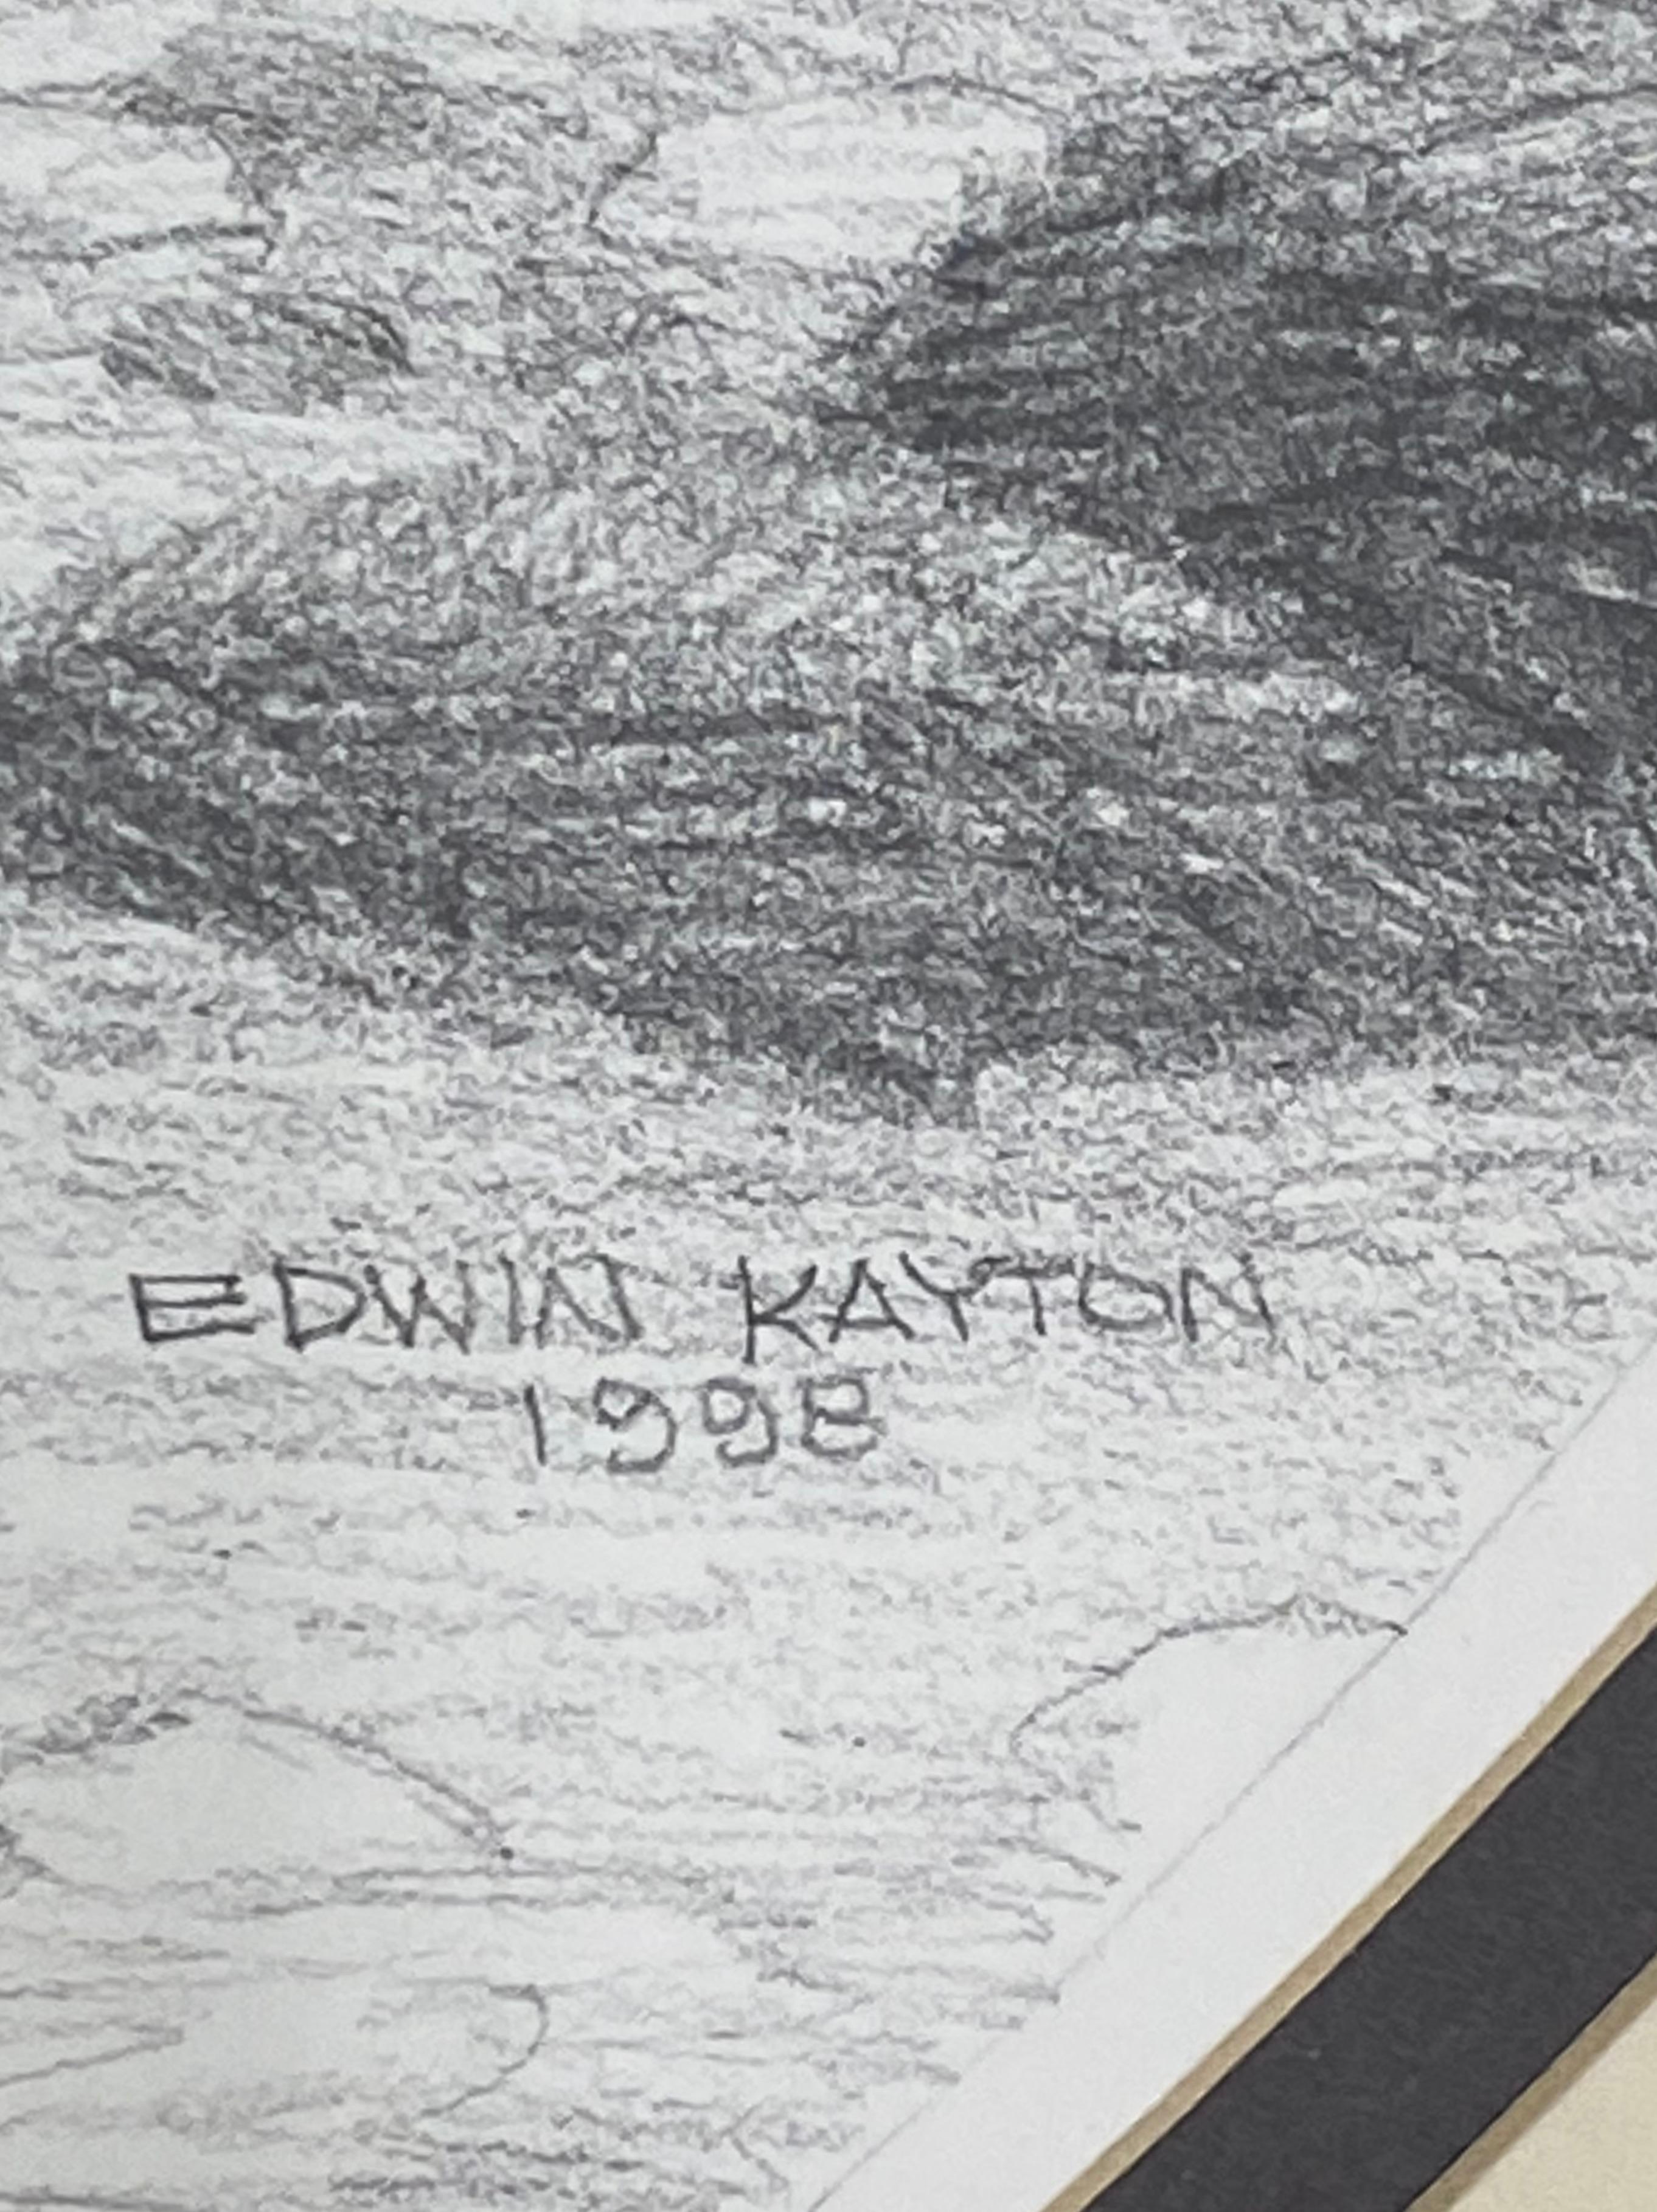 Edwin Kayton 